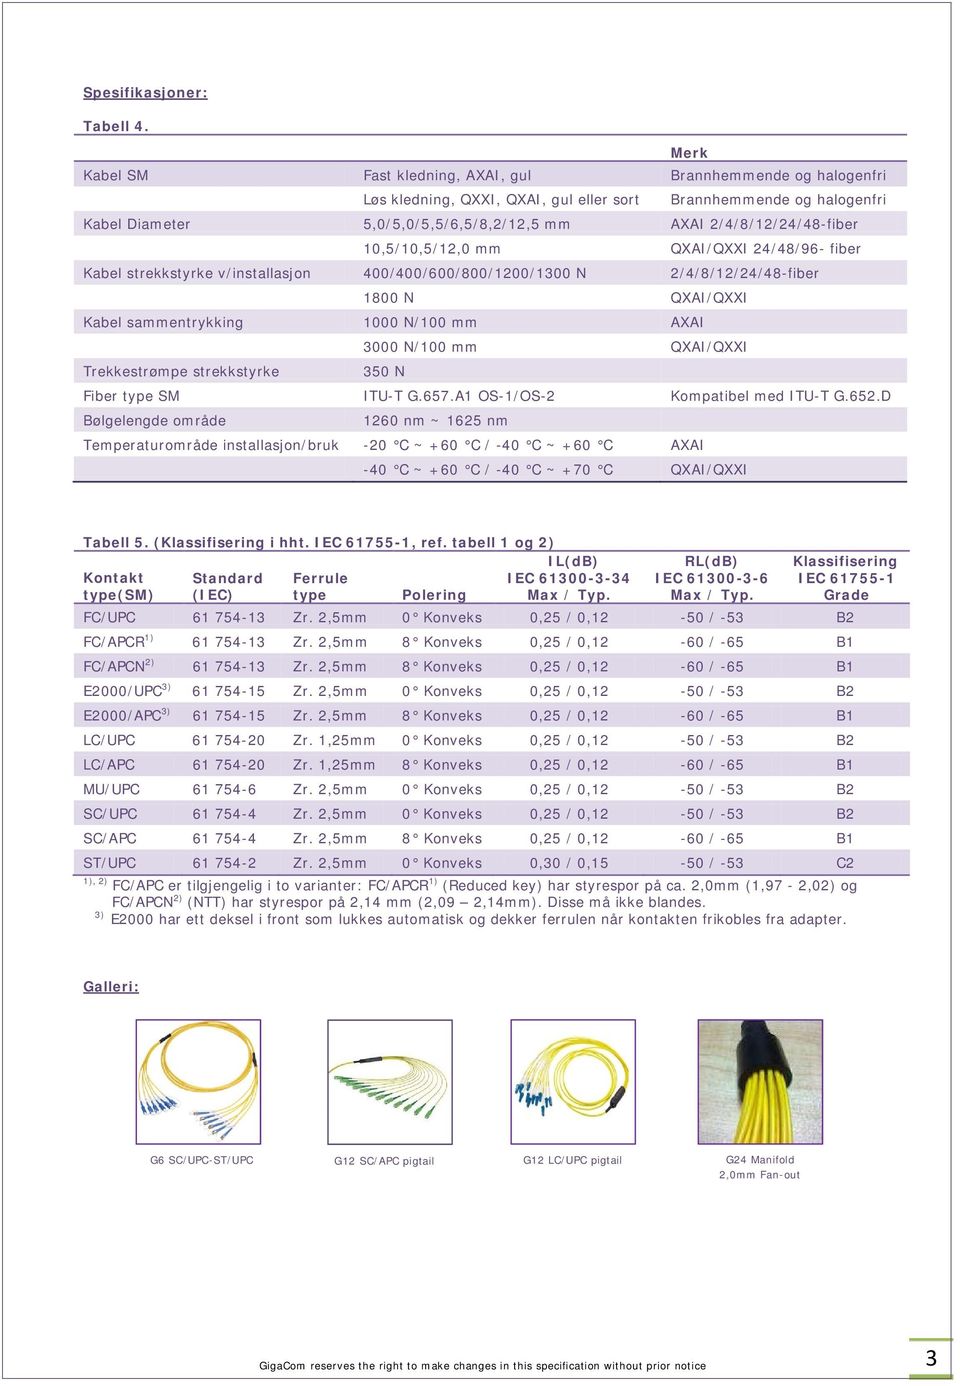 2/4/8/12/24/48-fiber 10,5/10,5/12,0 mm QXAI/QXXI 24/48/96- fiber Kabel strekkstyrke v/installasjon 400/400/600/800/1200/1300 N 2/4/8/12/24/48-fiber 1800 N QXAI/QXXI Kabel sammentrykking 1000 N/100 mm